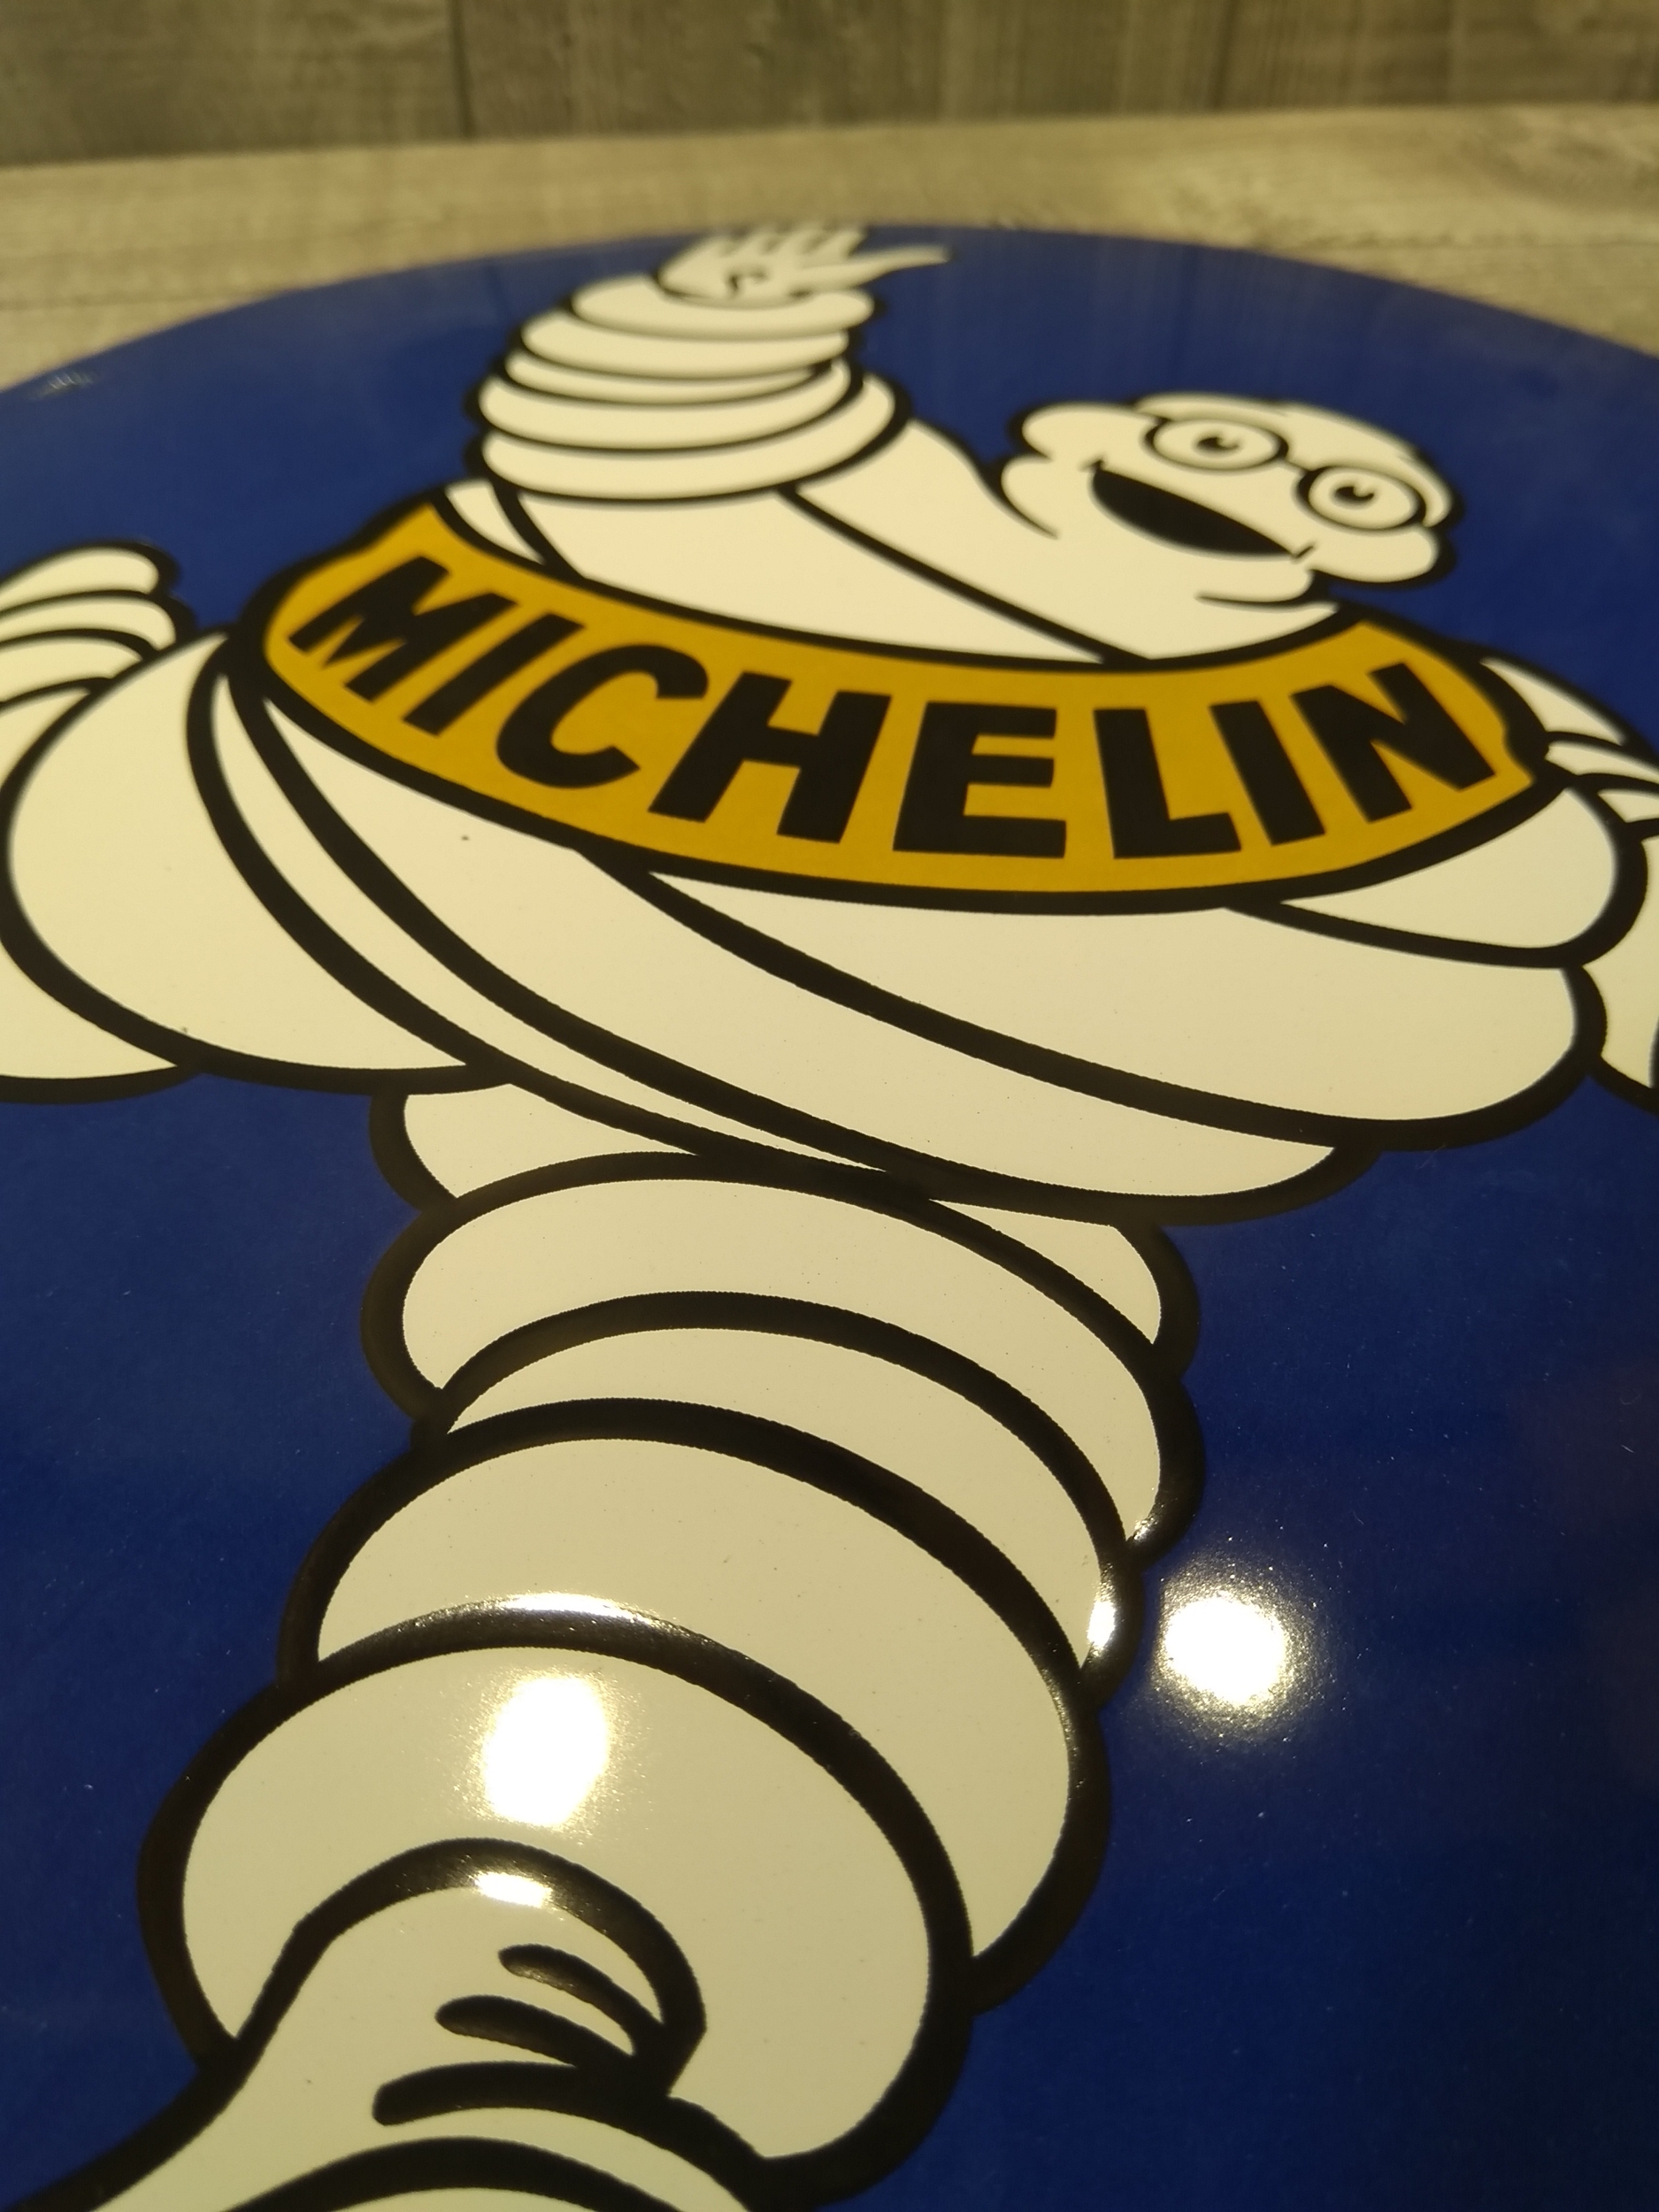 Plaque métal publicitaire vintage décoration Michelin